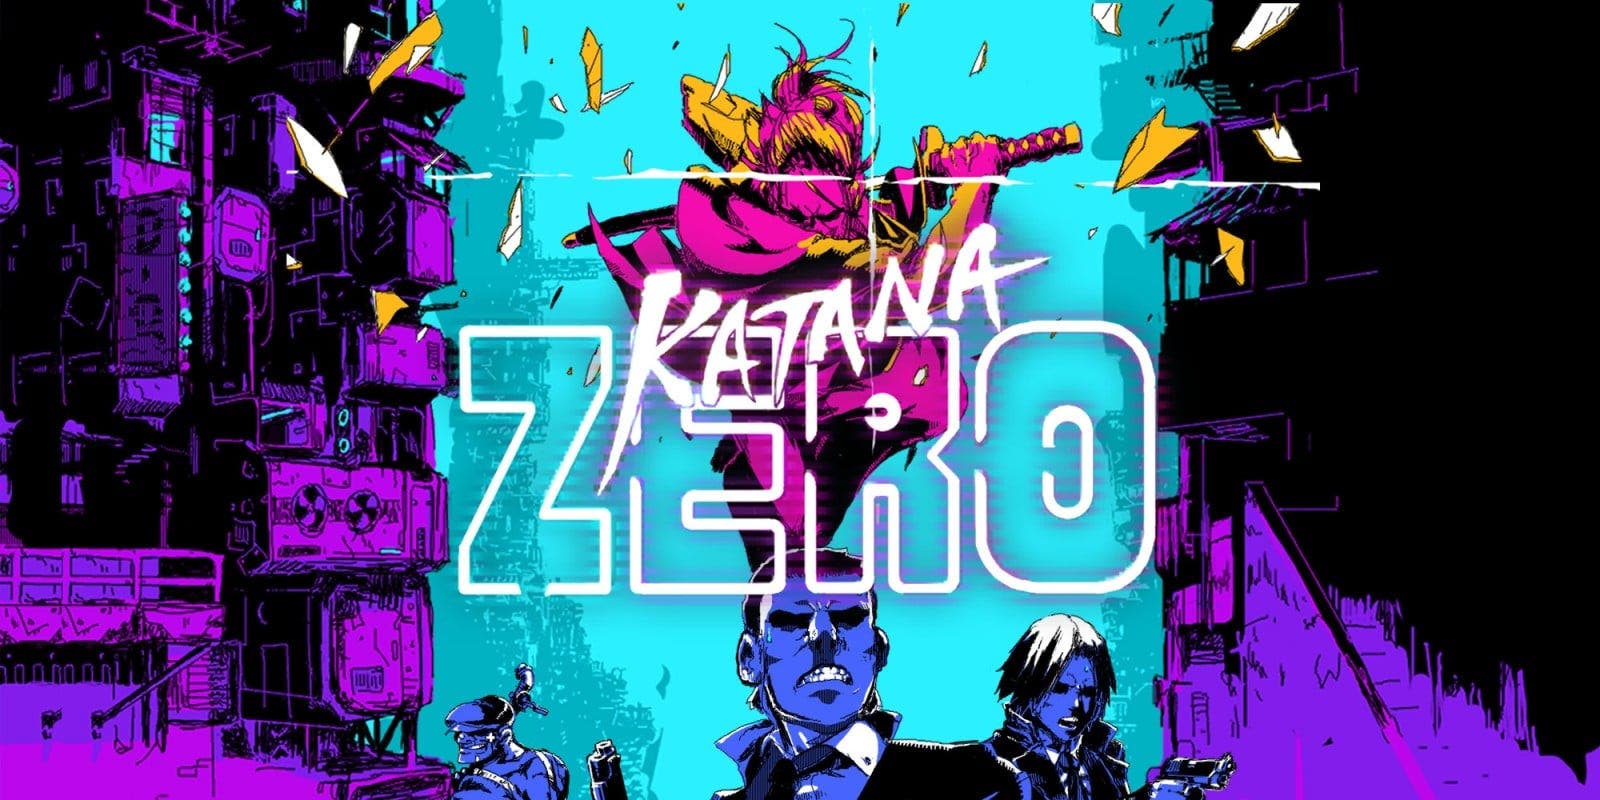 Katana Zero no será lanzado en Nintendo Switch en Australia por un problema con su clasificación